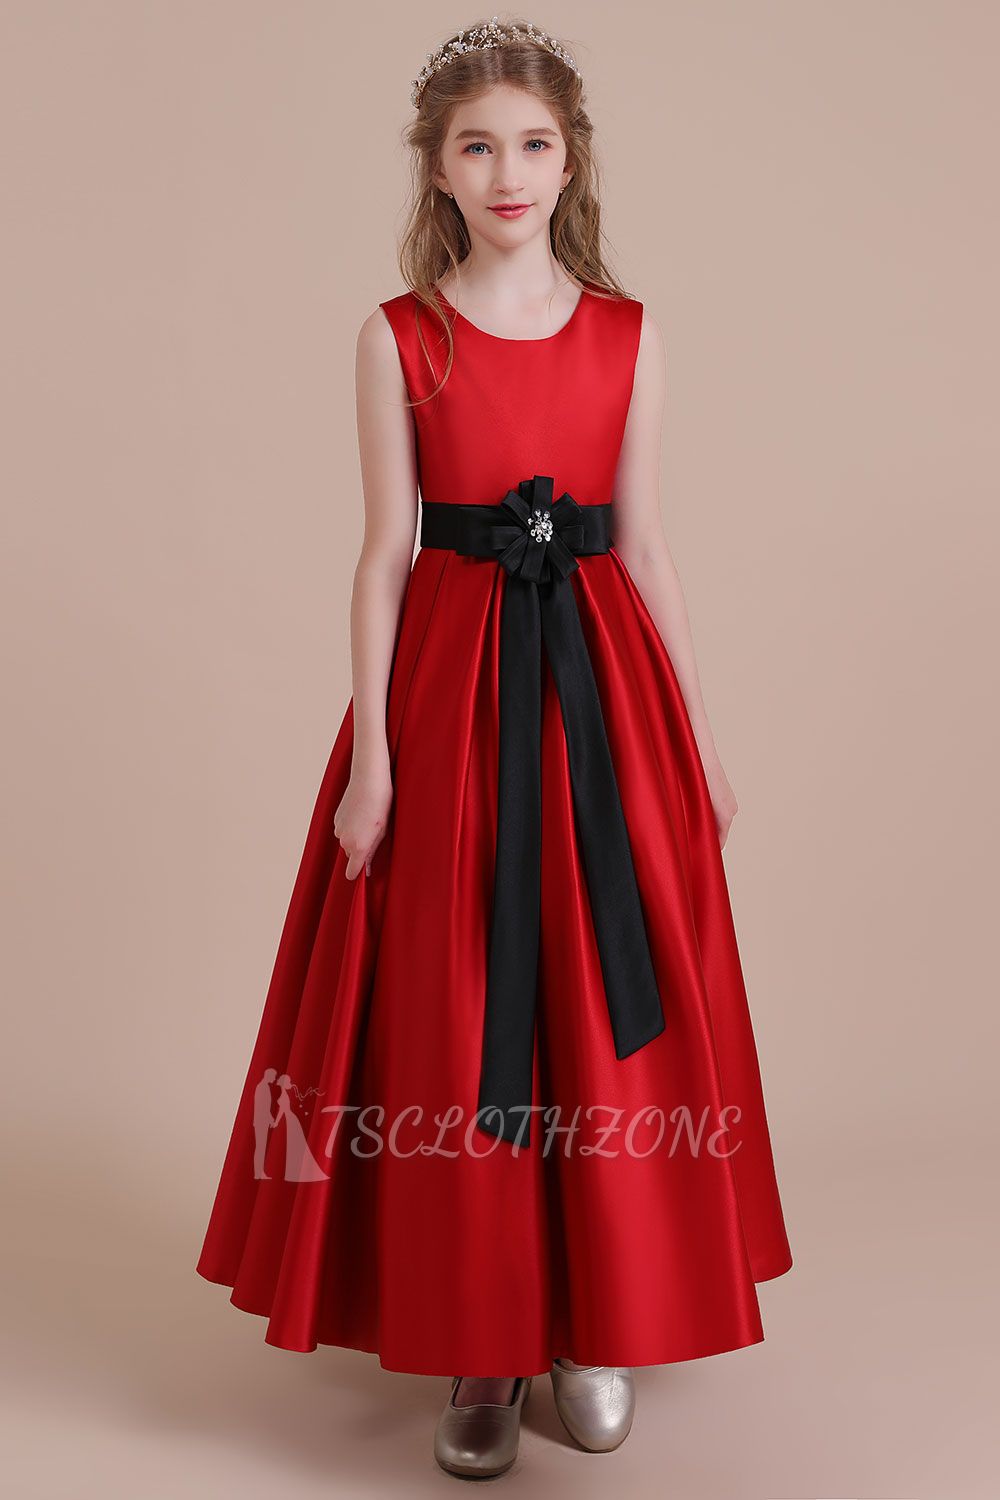 Modest Satin A-line Flower Girl Dress | Elegant Sleeveless Little Girls Dress for Wedding